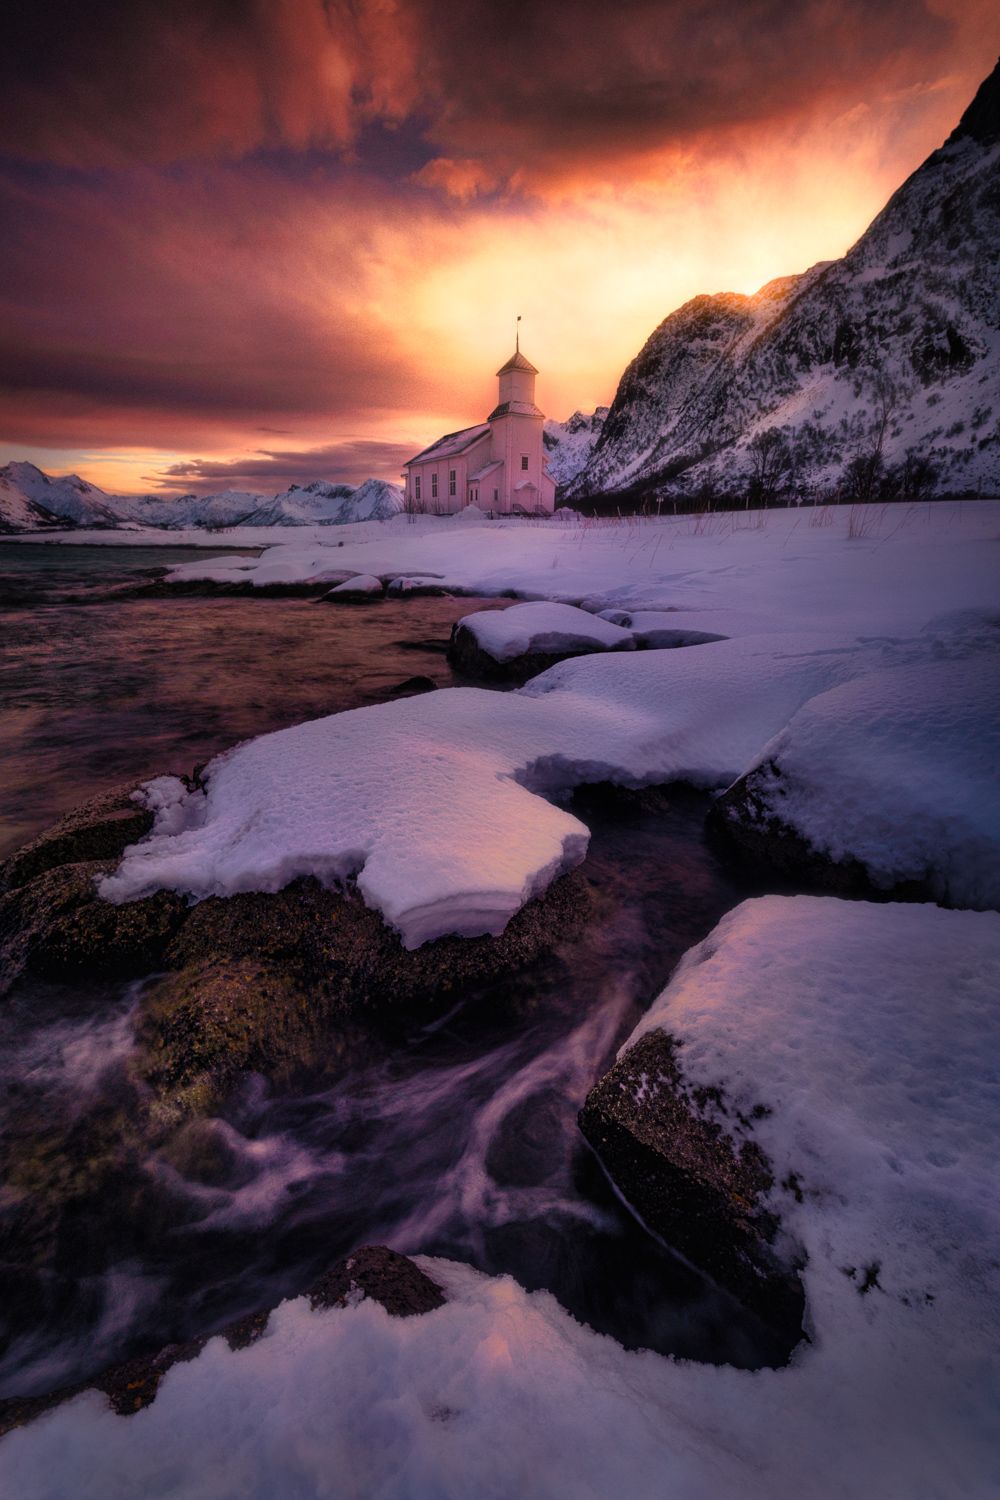 Arctics, Norway, church, winter, violet, sky, drama, sunset, Michael Zehnpfennig